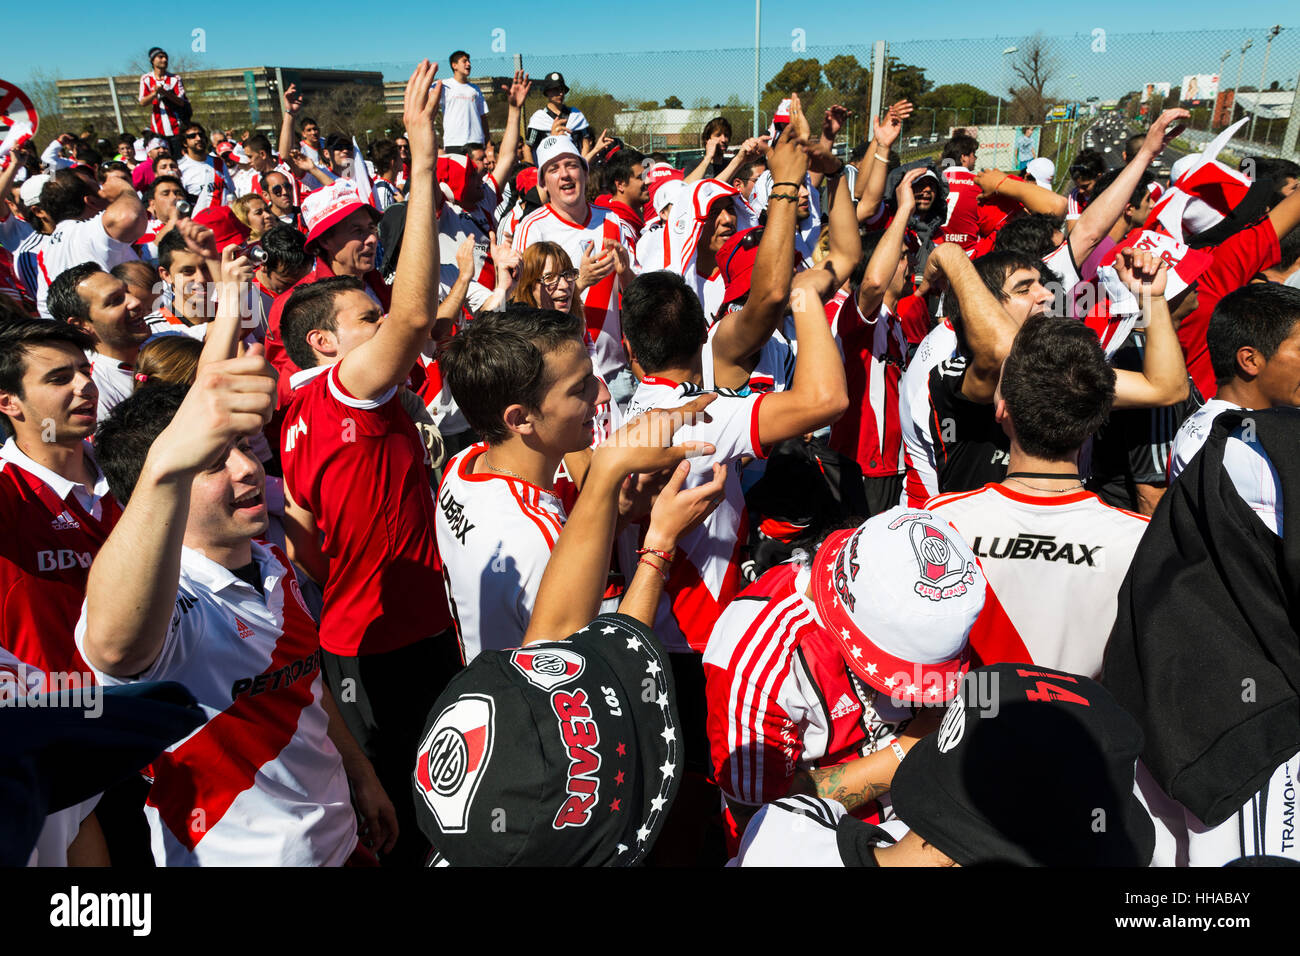 Buenos Aires, Argentinien - 6. Oktober 2013: River-Plate-Fans singen und tanzen während des Wartens auf die Stadion-Türen zu öffnen, um ein Fußballspiel zu besuchen Stockfoto